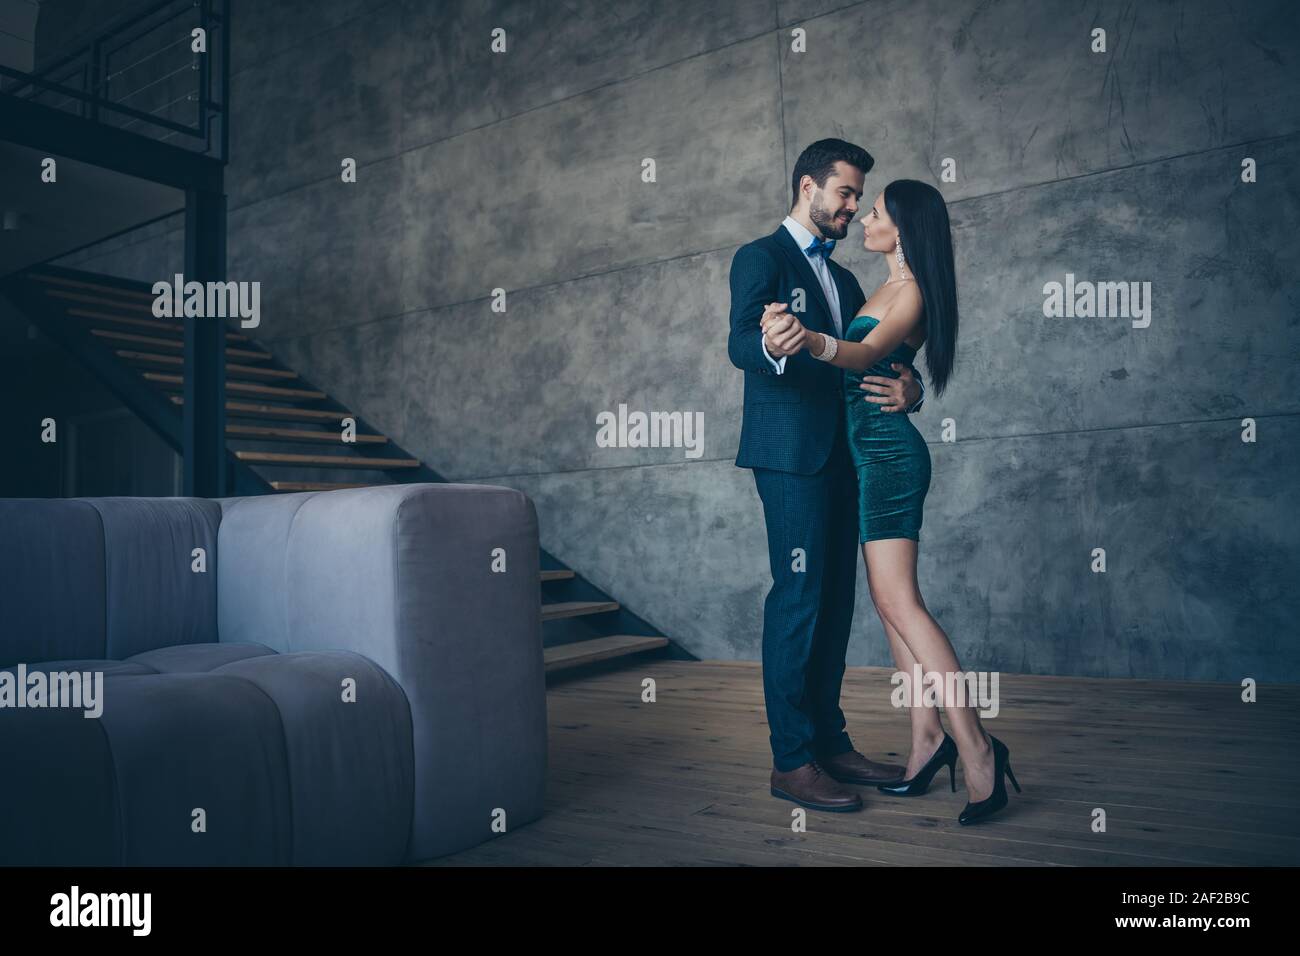 Slow dance immagini e fotografie stock ad alta risoluzione - Alamy